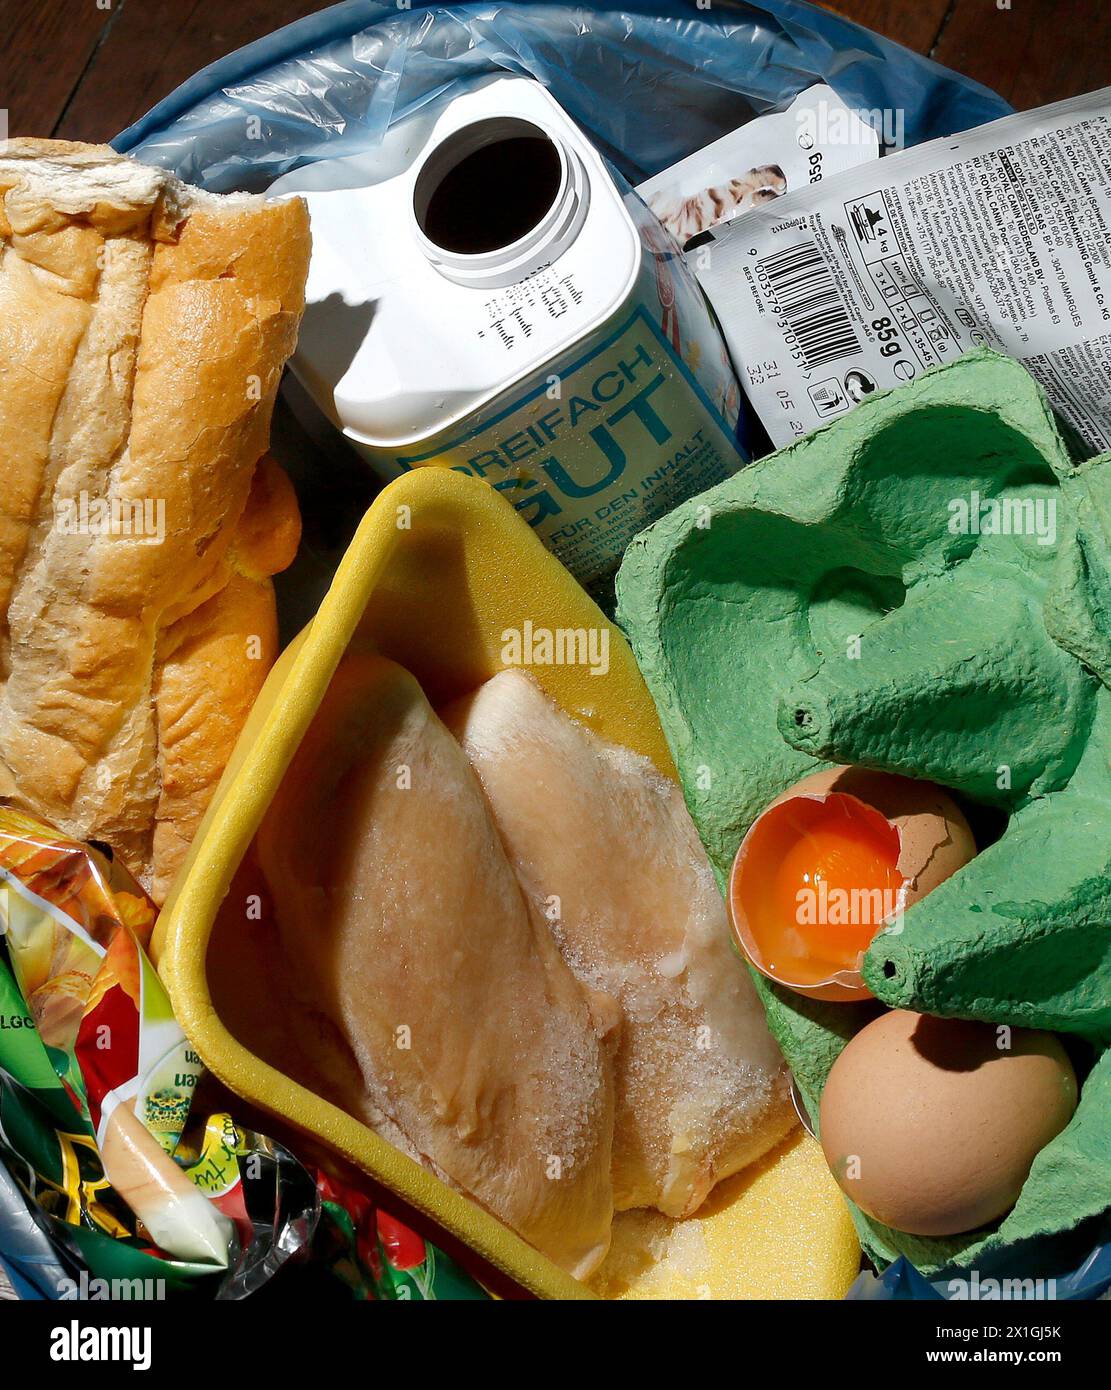 Caratteristica - i rifiuti alimentari o la perdita di cibo sono alimenti che vengono gettati o persi non mangiati. IMMAGINE: Uova, bottiglia di latte, pane in una spazzatura può il 14 novembre 2012. - 20121113 PD5401 - Rechteinfo: Rights Managed (RM) Foto Stock